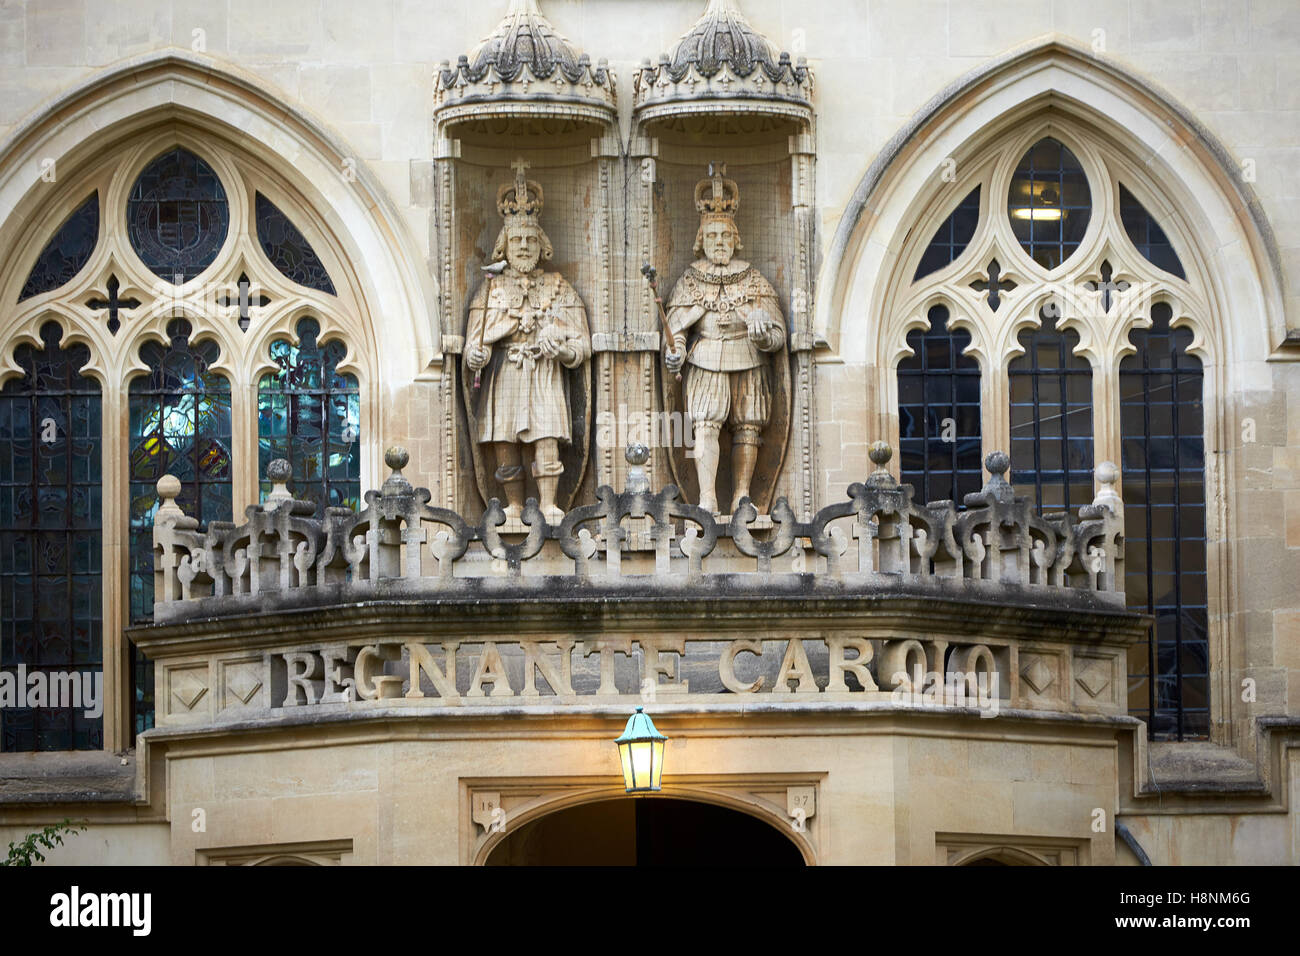 Le portique de l'entrée hall à l'Oriel College commémore le règne de Charles I dans la pierre percée Banque D'Images